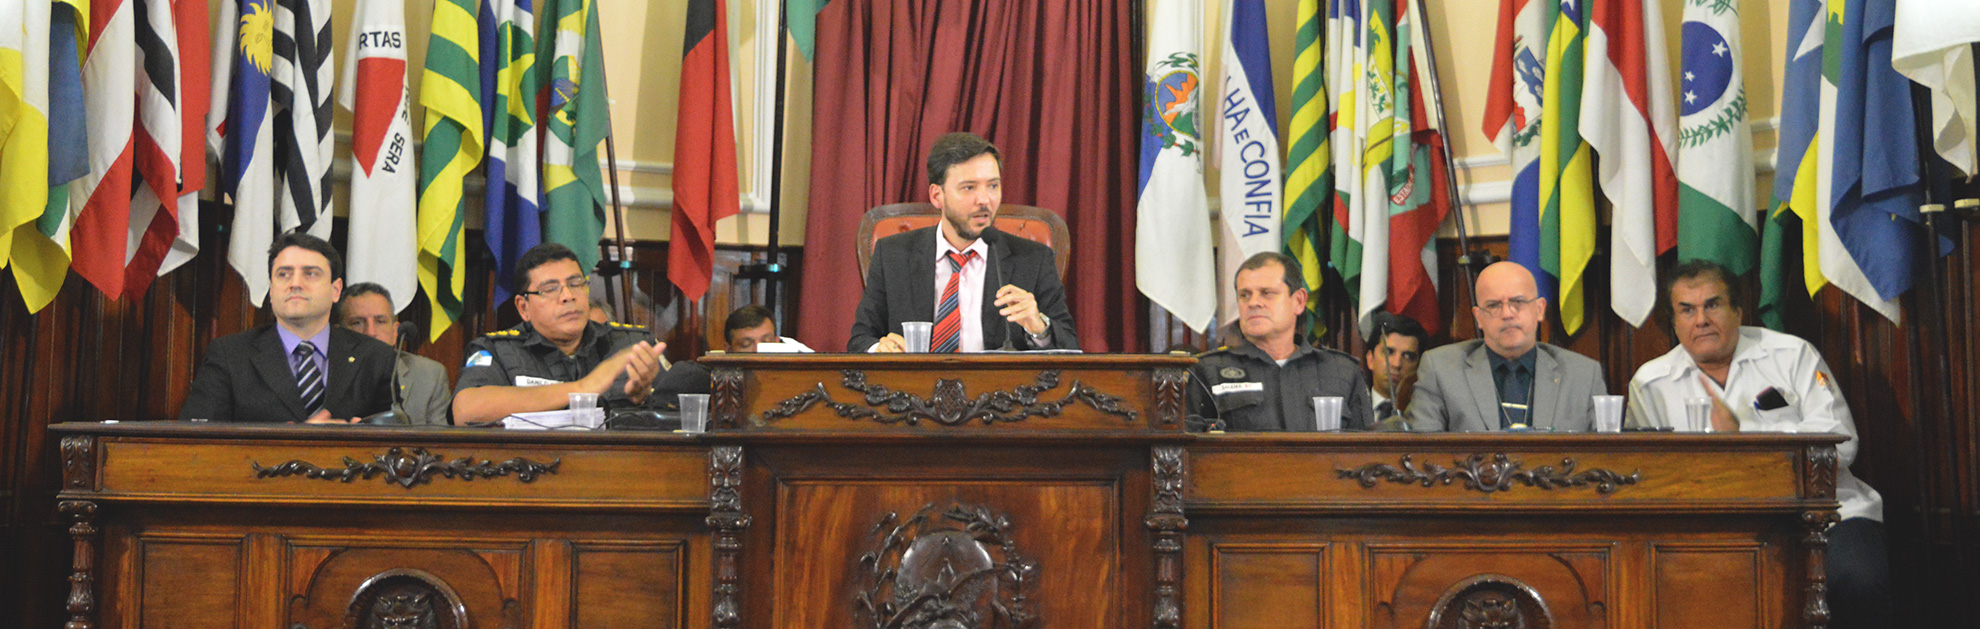 Segurança de Niterói será tema de reunião no MP